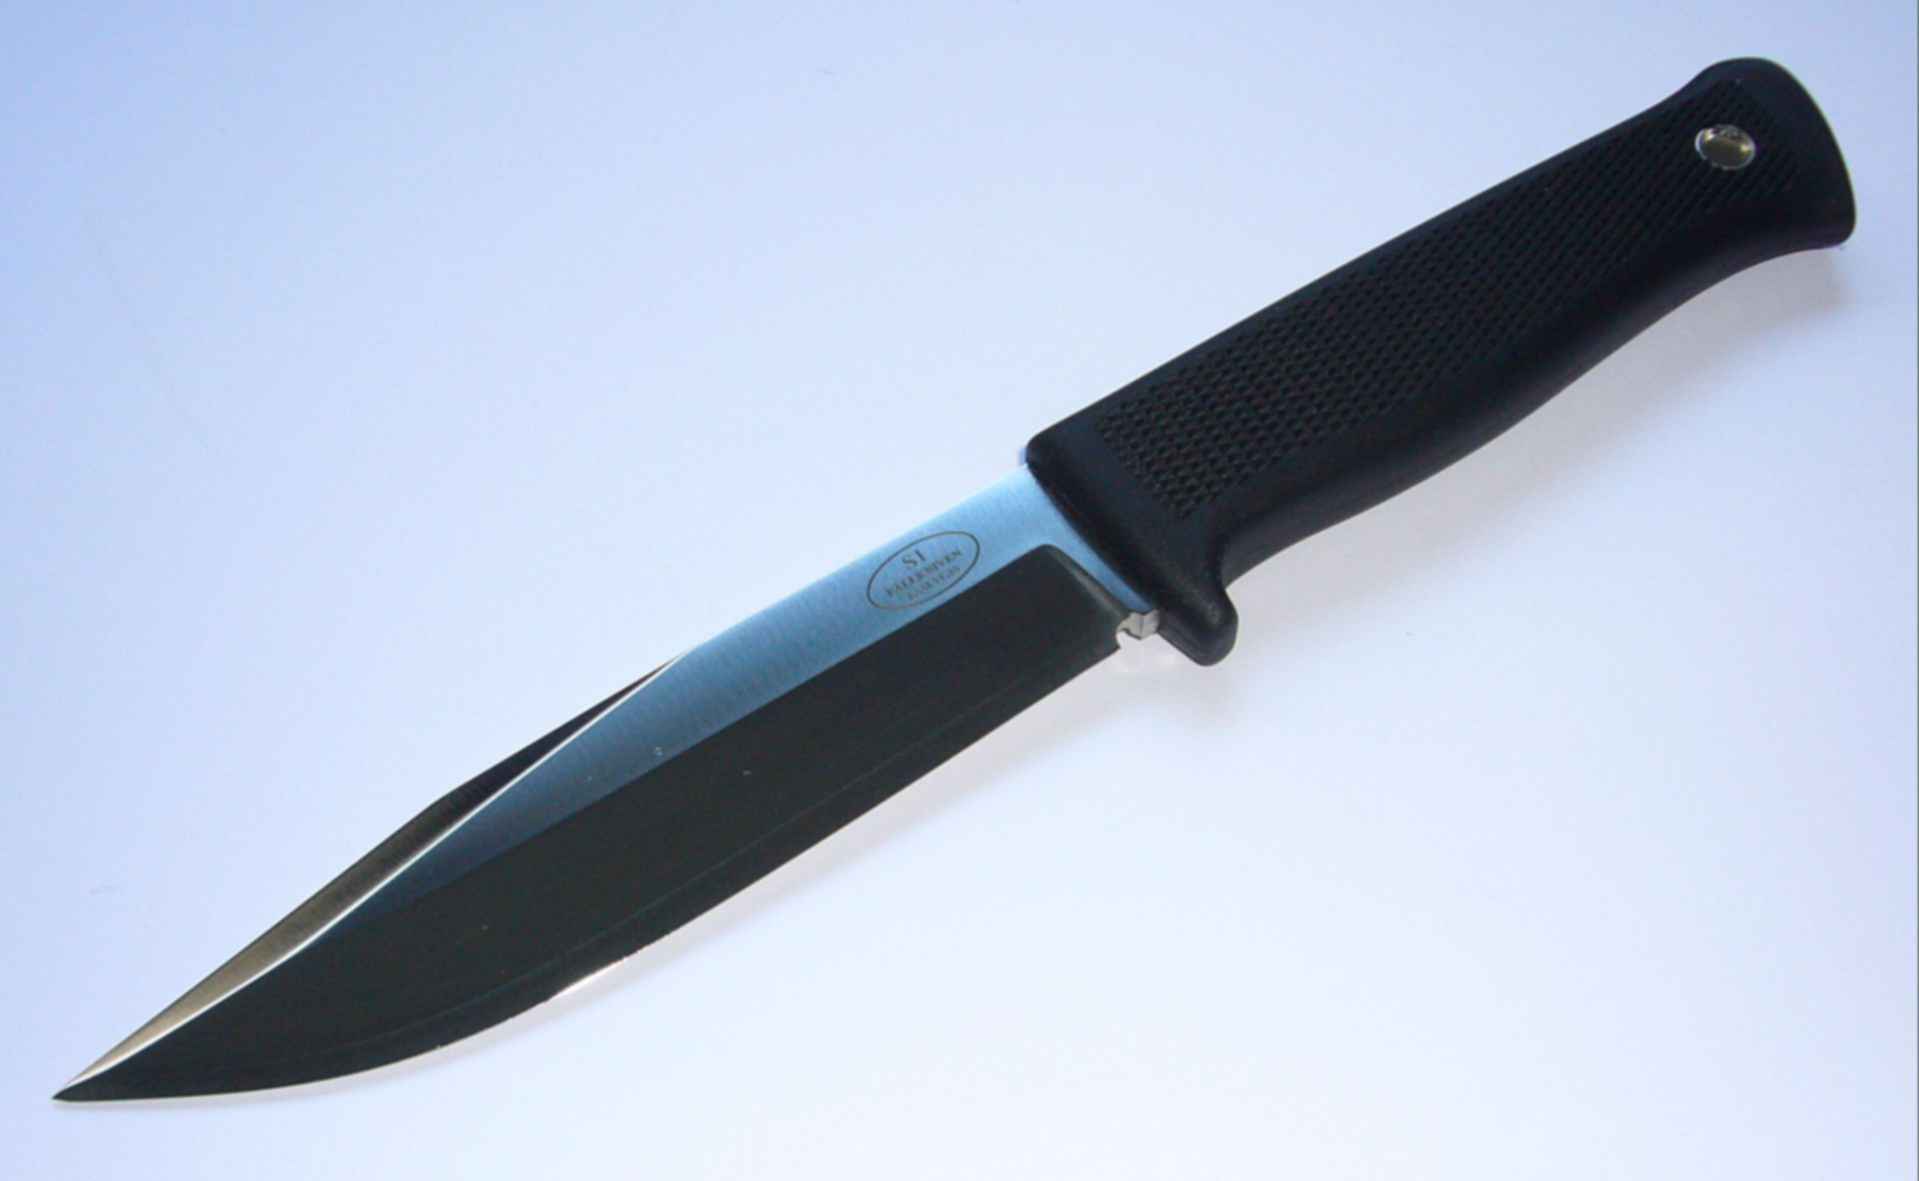 Купить нож в томске. Купить нож. Купить нож KESIWO Predator j129 g10. Канарский нож купить. Нож купить в Кишиневе.